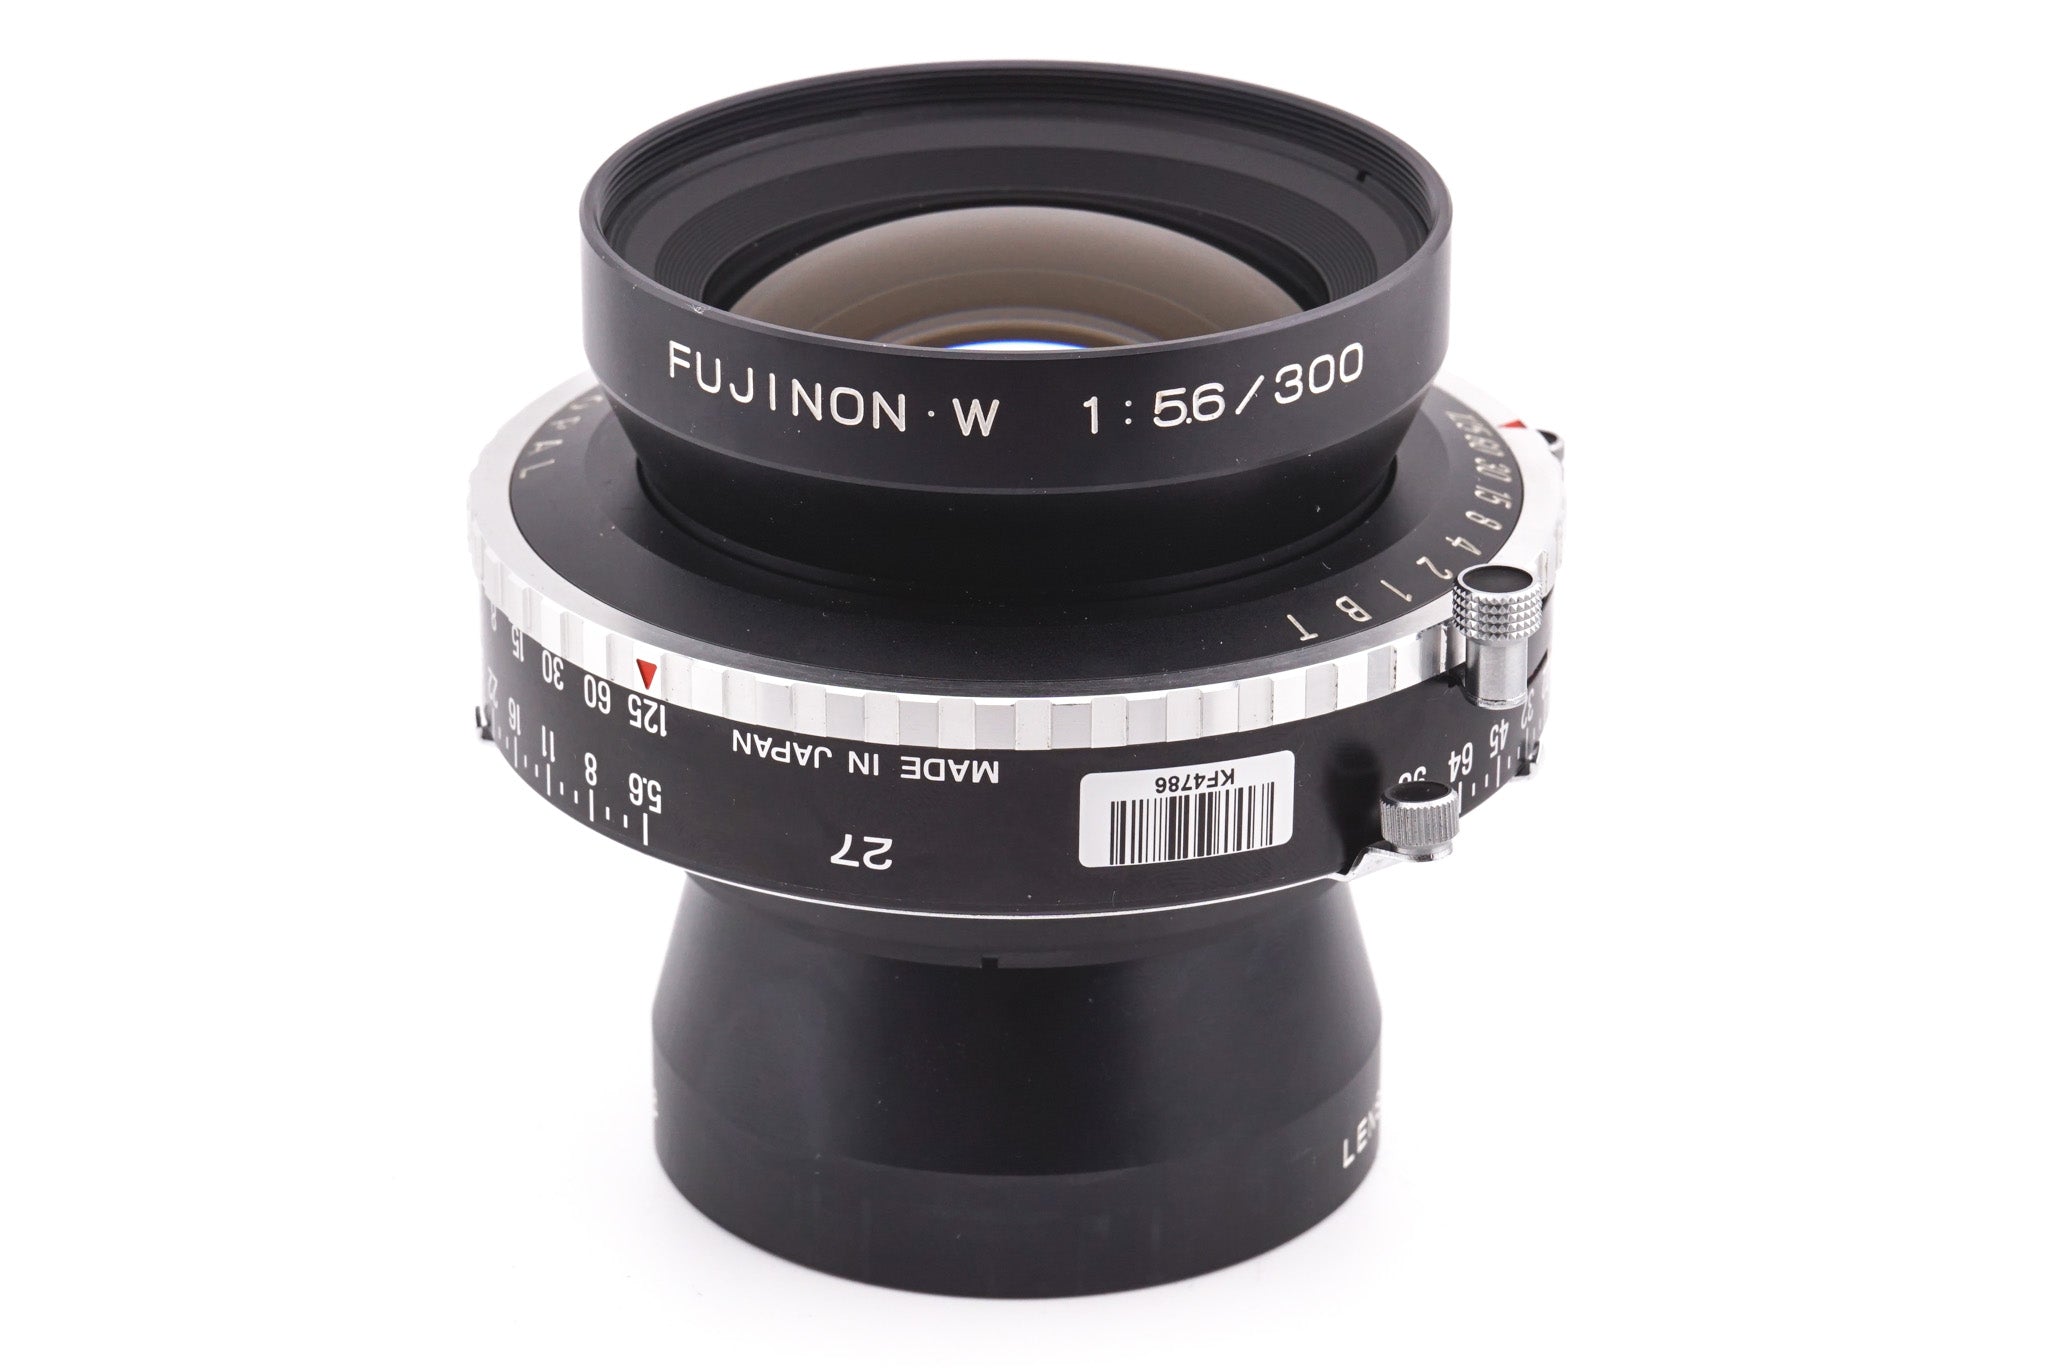 Fuji 300mm f5.6 Fujinon W (Shutter) - Lens